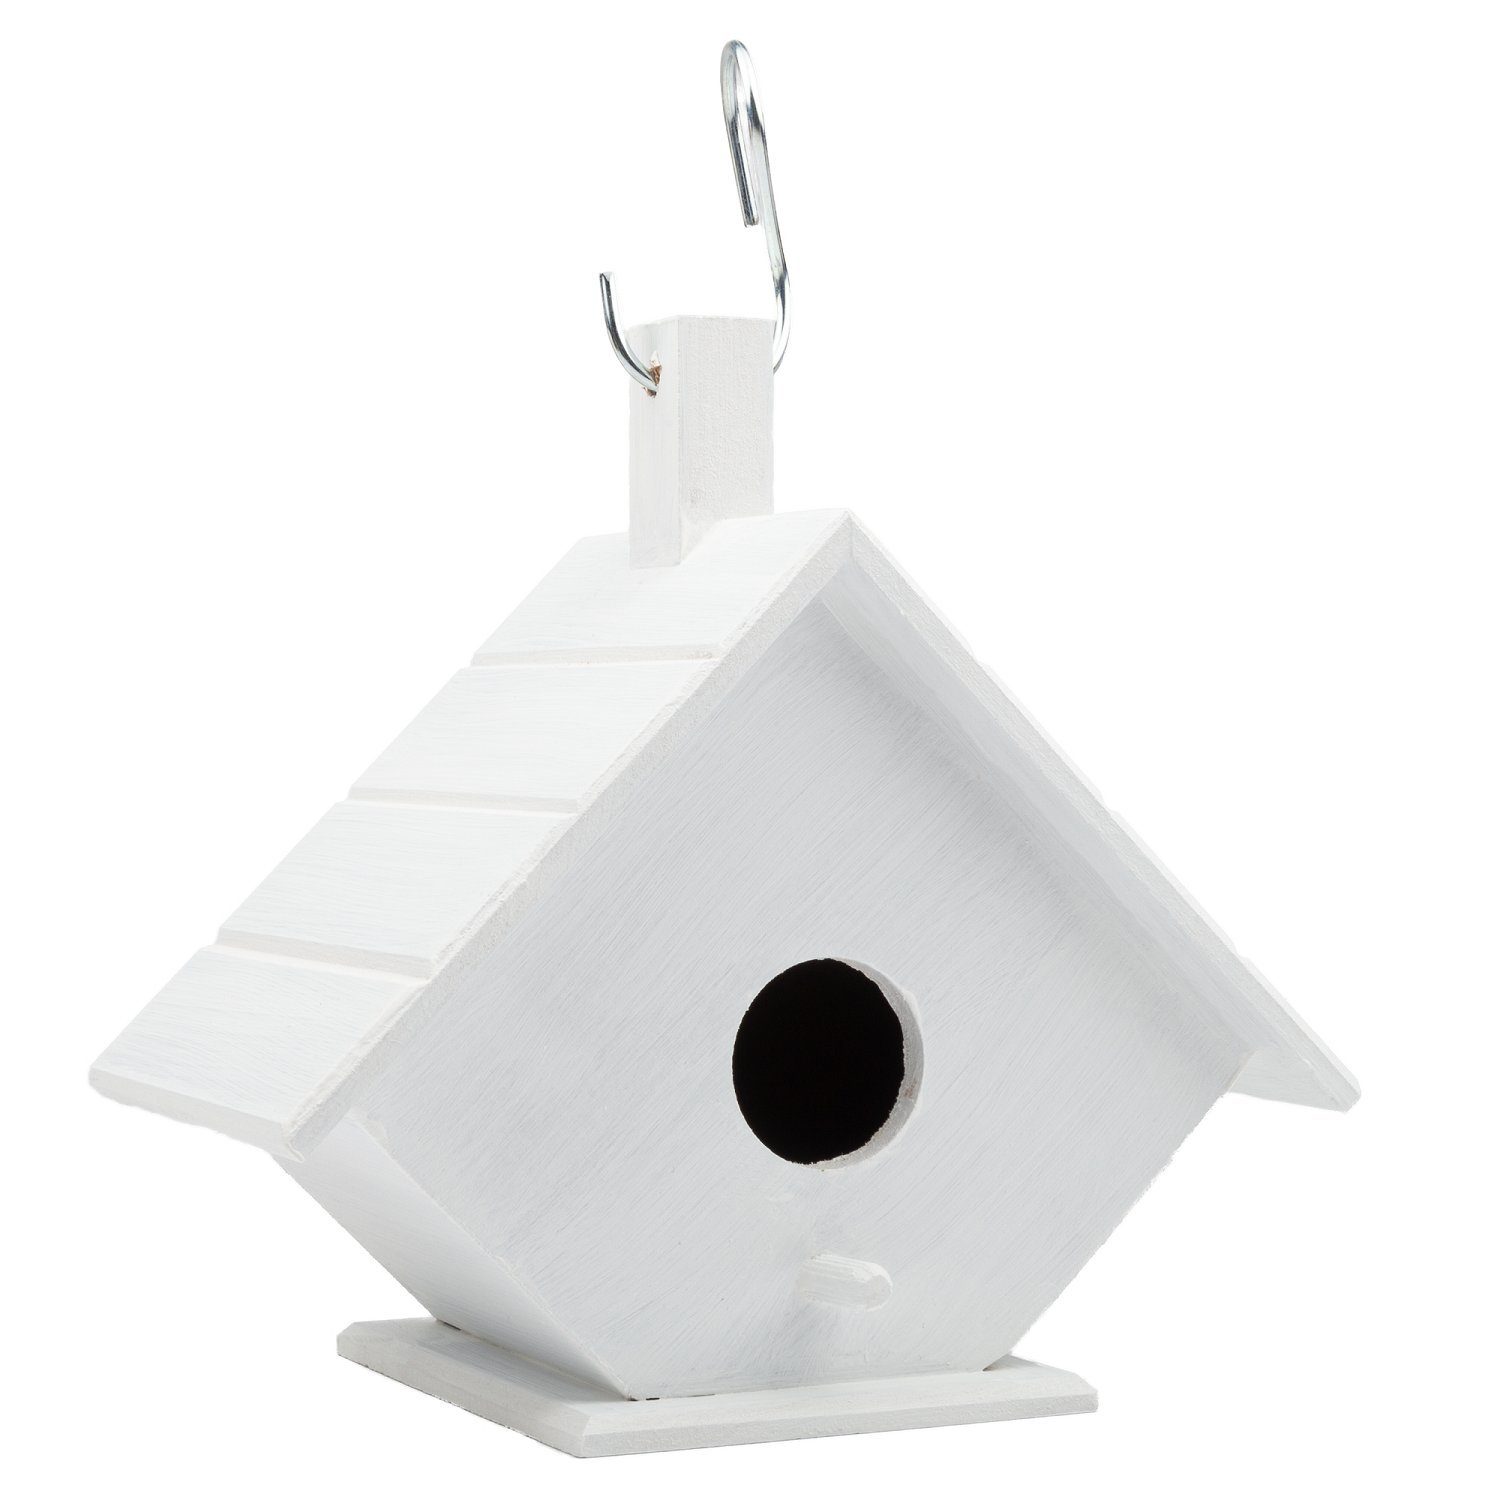 Belmique Vogelhaus Inklusive 10 bunte Acrylmarker, Weißes Vogelhäuschen zum selber Gestalten